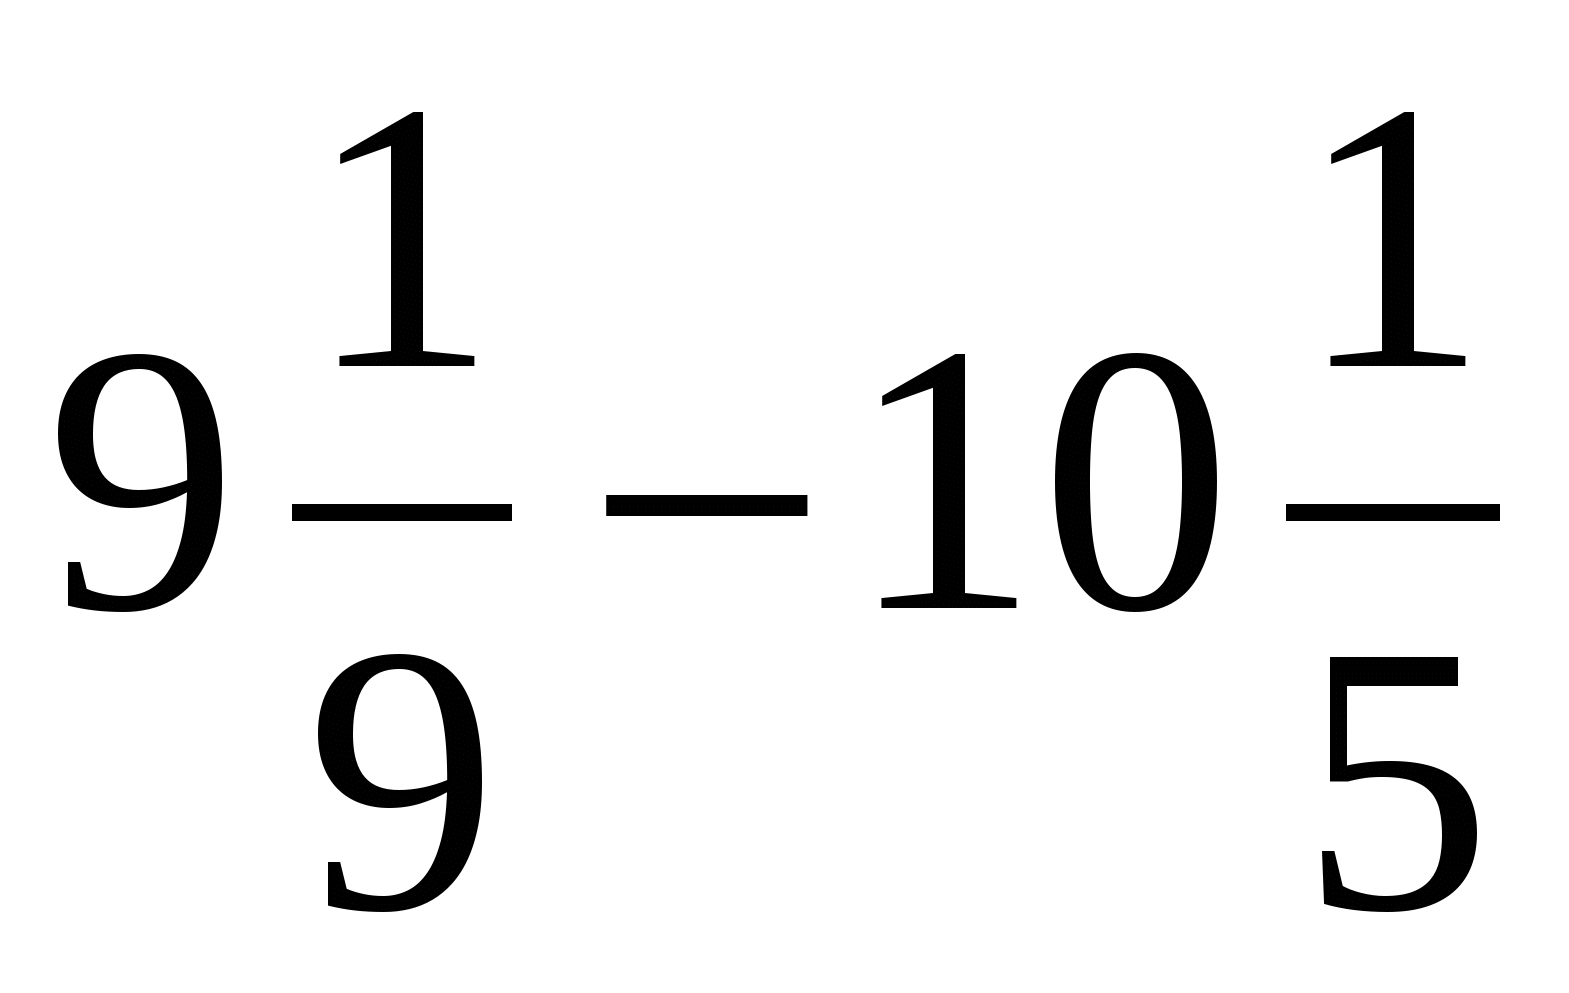 Урок математики для 6 класса по теме «Сложение чисел с разными знаками»